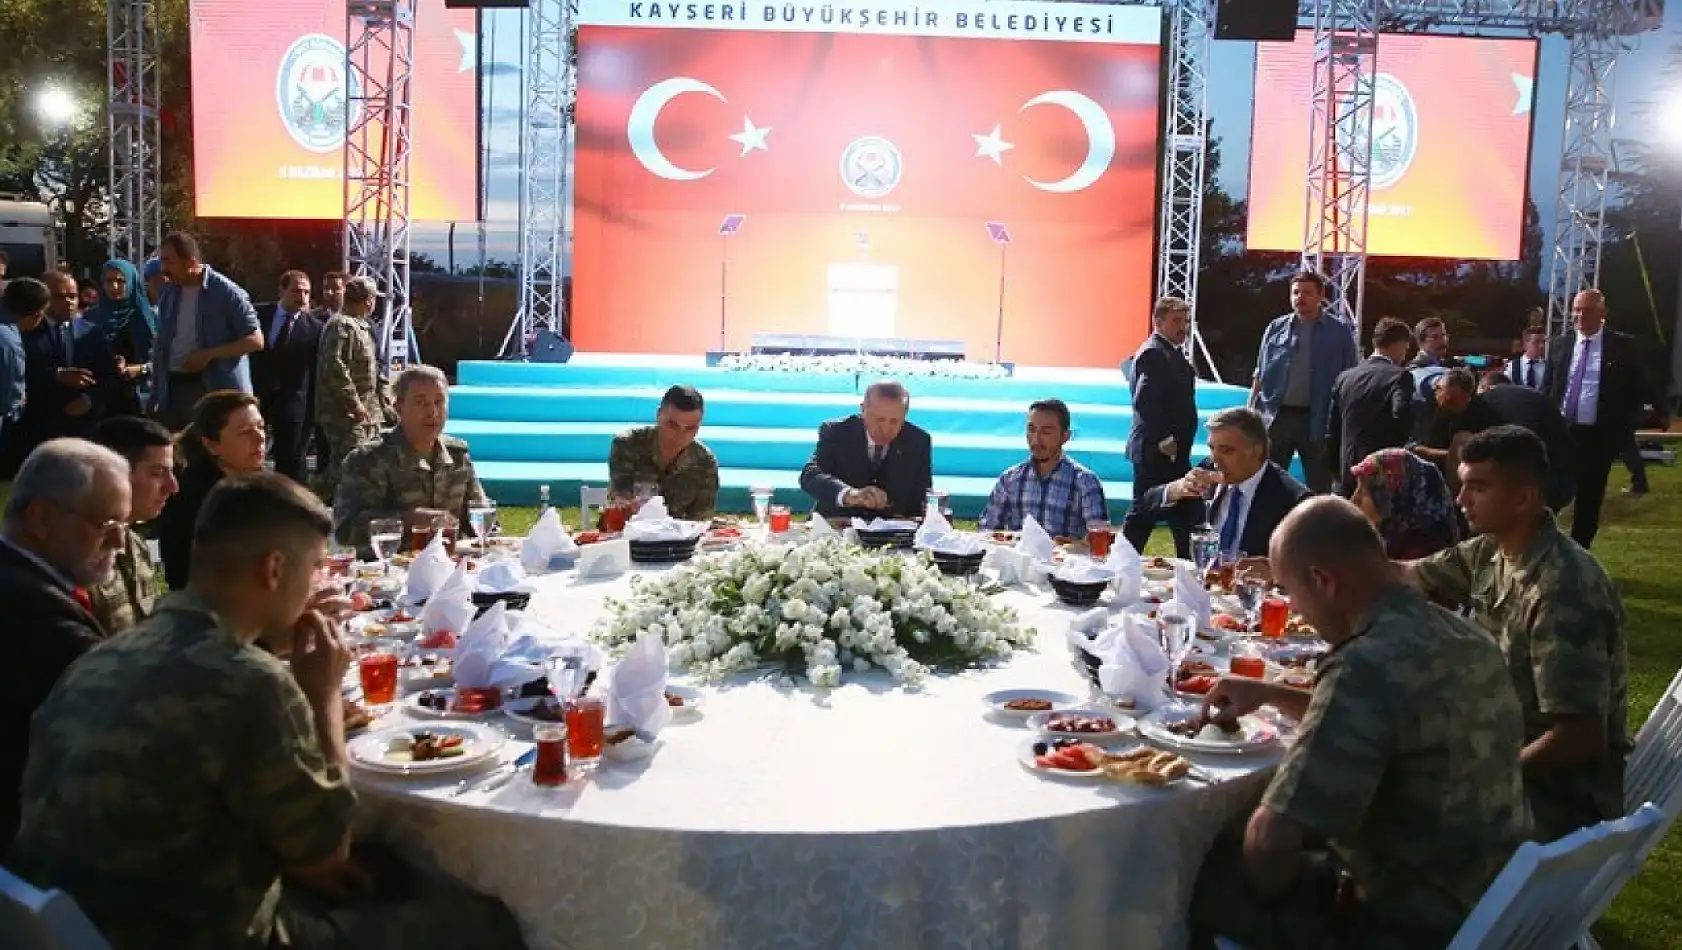 Cumhurbaşkanı Erdoğan'ın yıllar önce Kayseri'de verdiği söz gündem oldu: 'Çözeceğiz' dedi ama çözmedi!